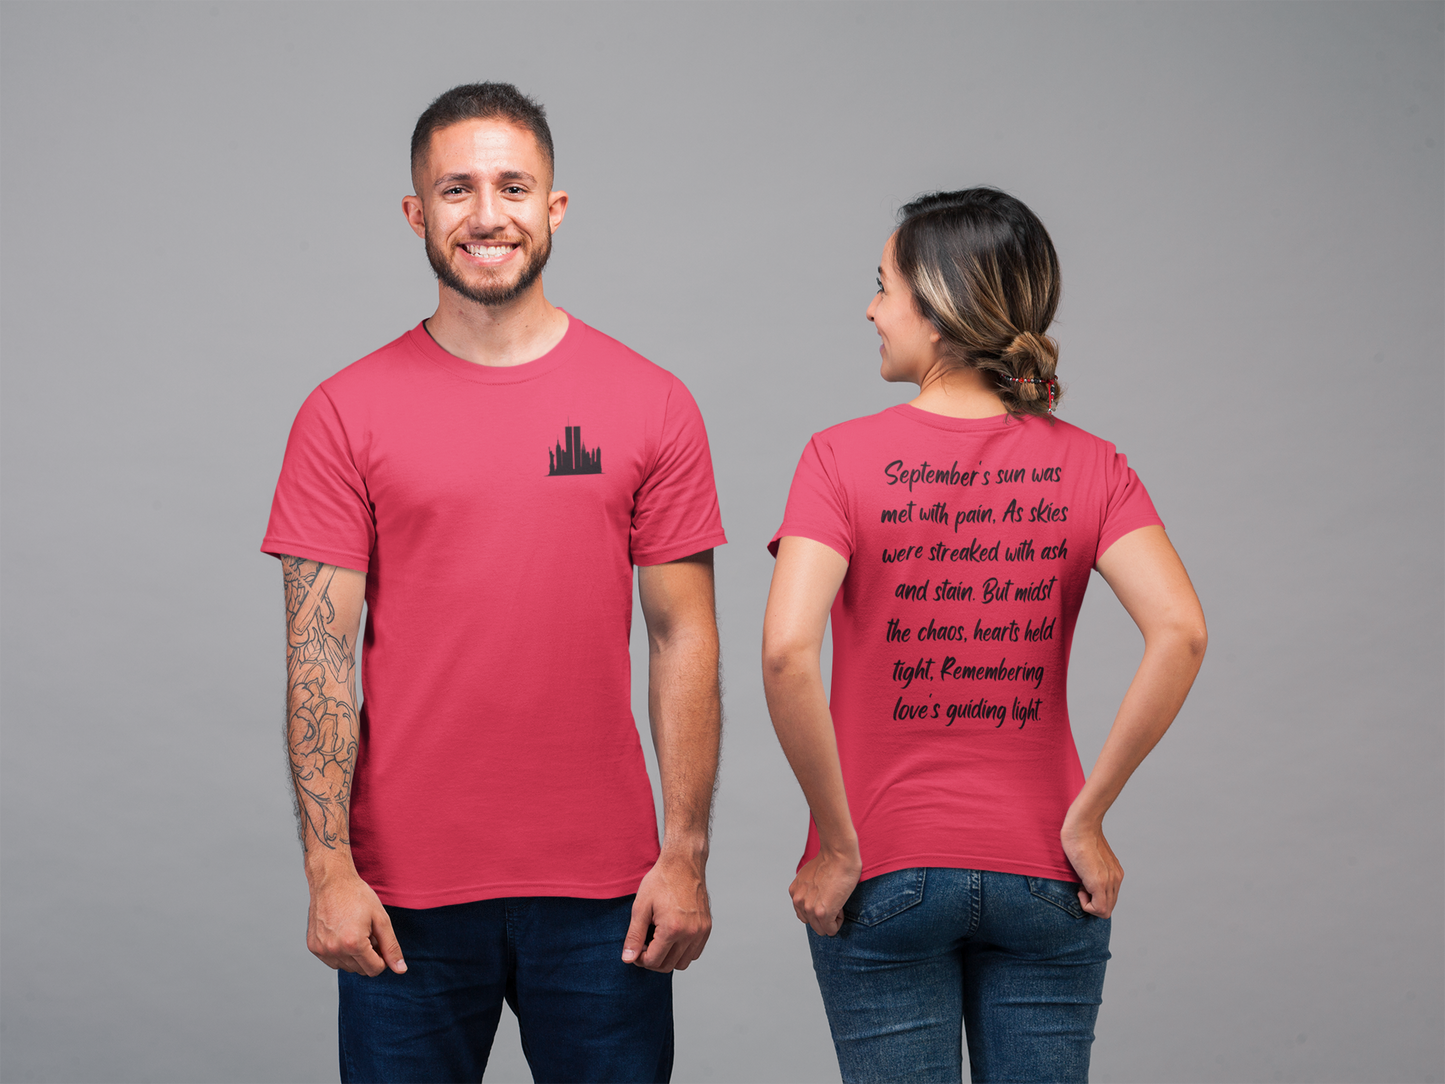 Recuerda siempre, un poema de recuerdo - Camiseta unisex para hombre y mujer